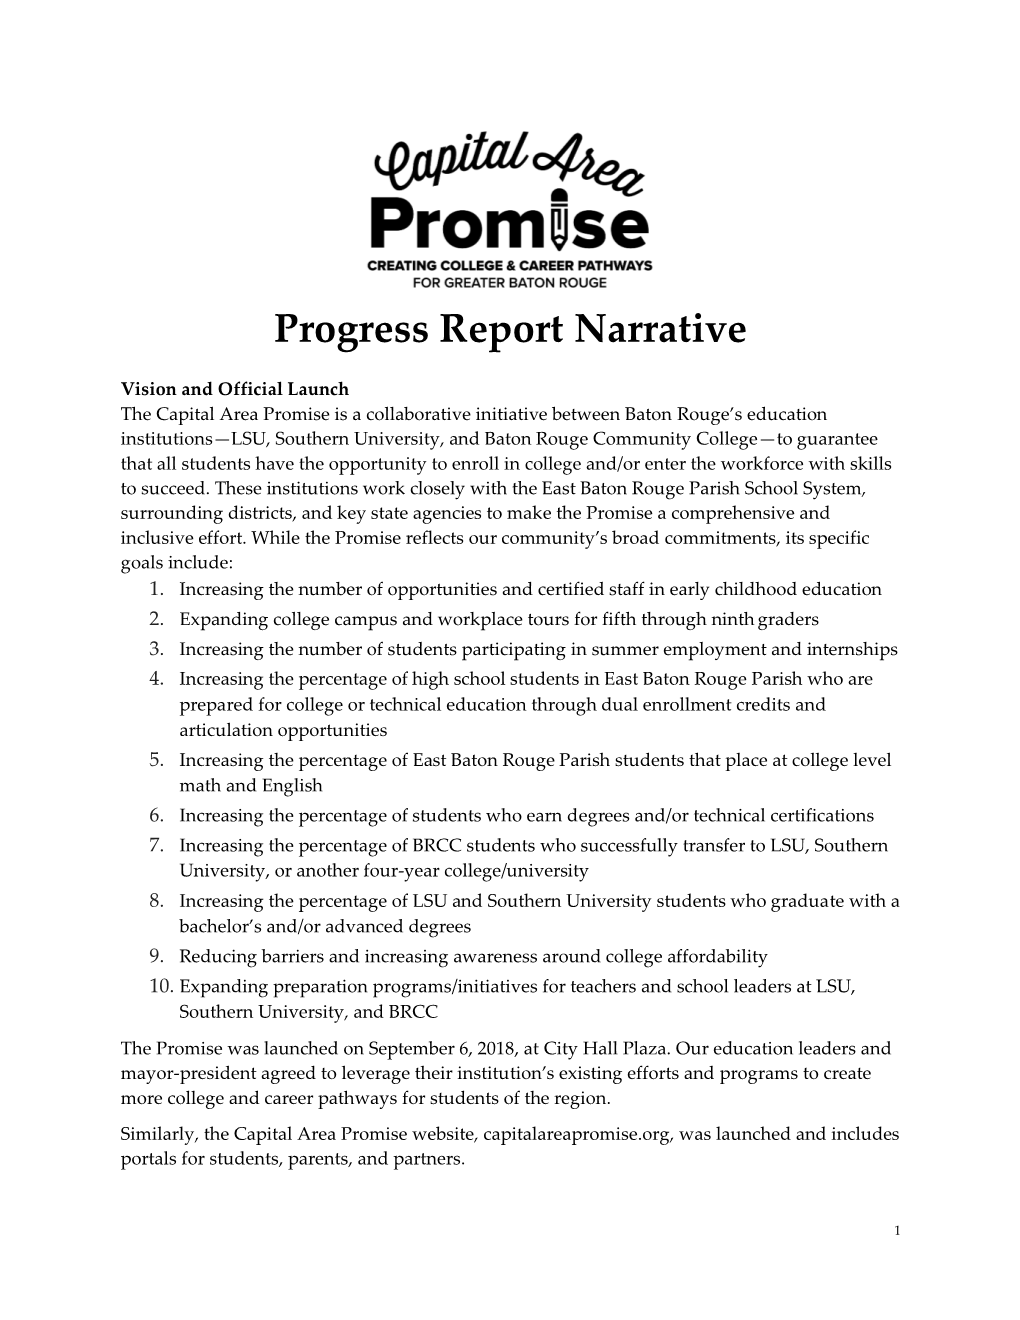 Capital Area Promise Progress Report Narrative